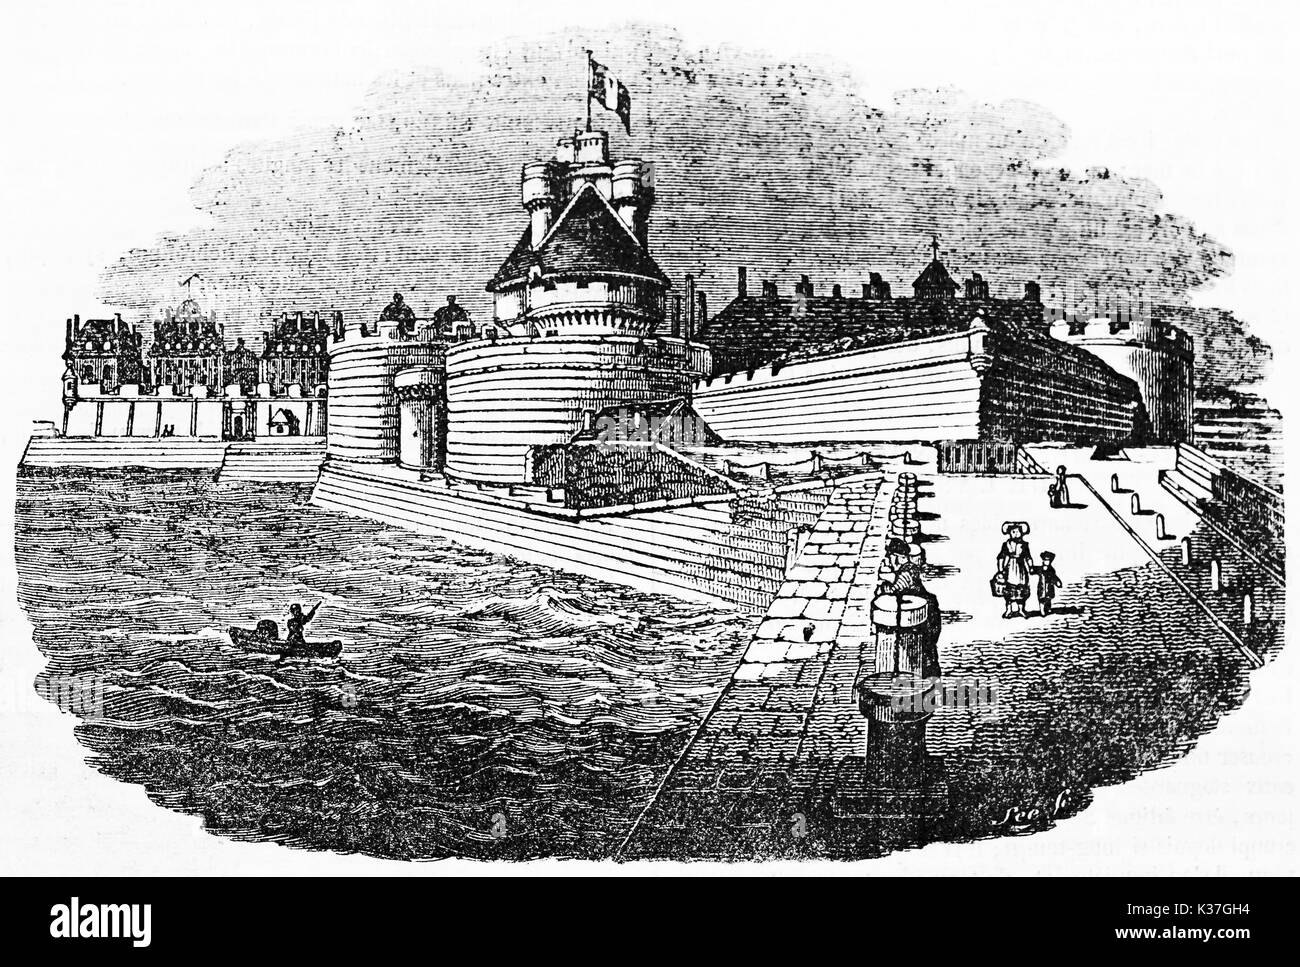 Vue de l'ancien port fortifié médiéval château de Saint-Malo, Bretagne France. Vieille Illustration par Lee publié le magasin pittoresque Paris 1834 Banque D'Images